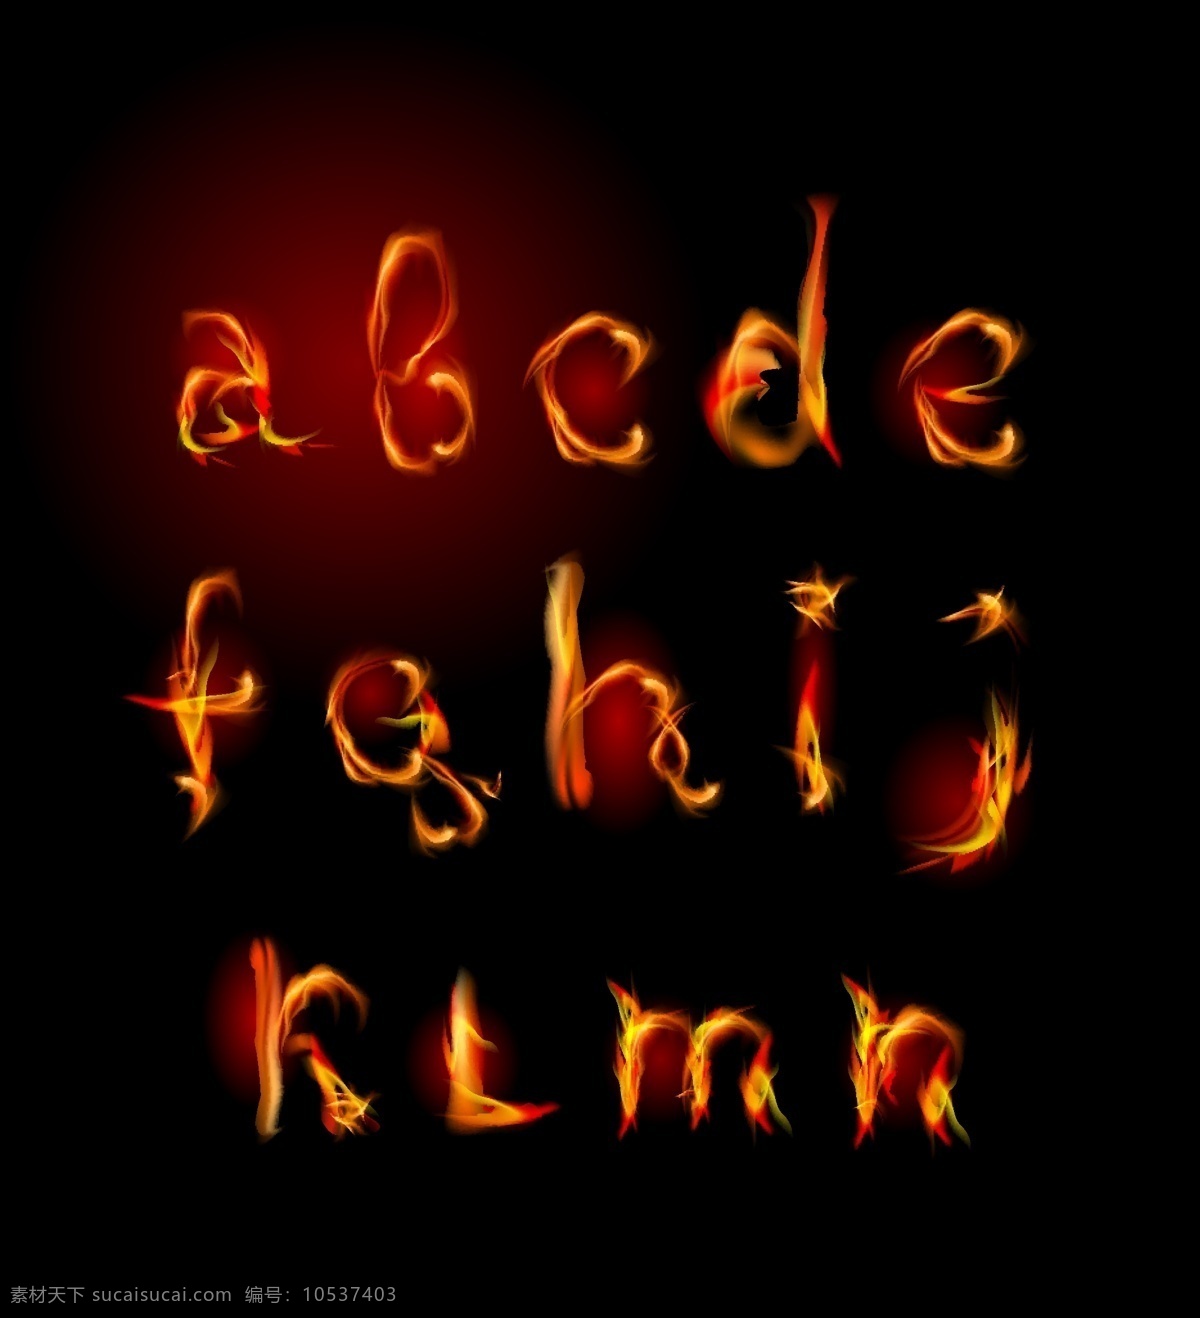 火焰 英文 字母 火焰英文字母 燃烧 数字 符号 形状 质感 拉丁字母 书画文字 文化艺术 矢量素材 黑色